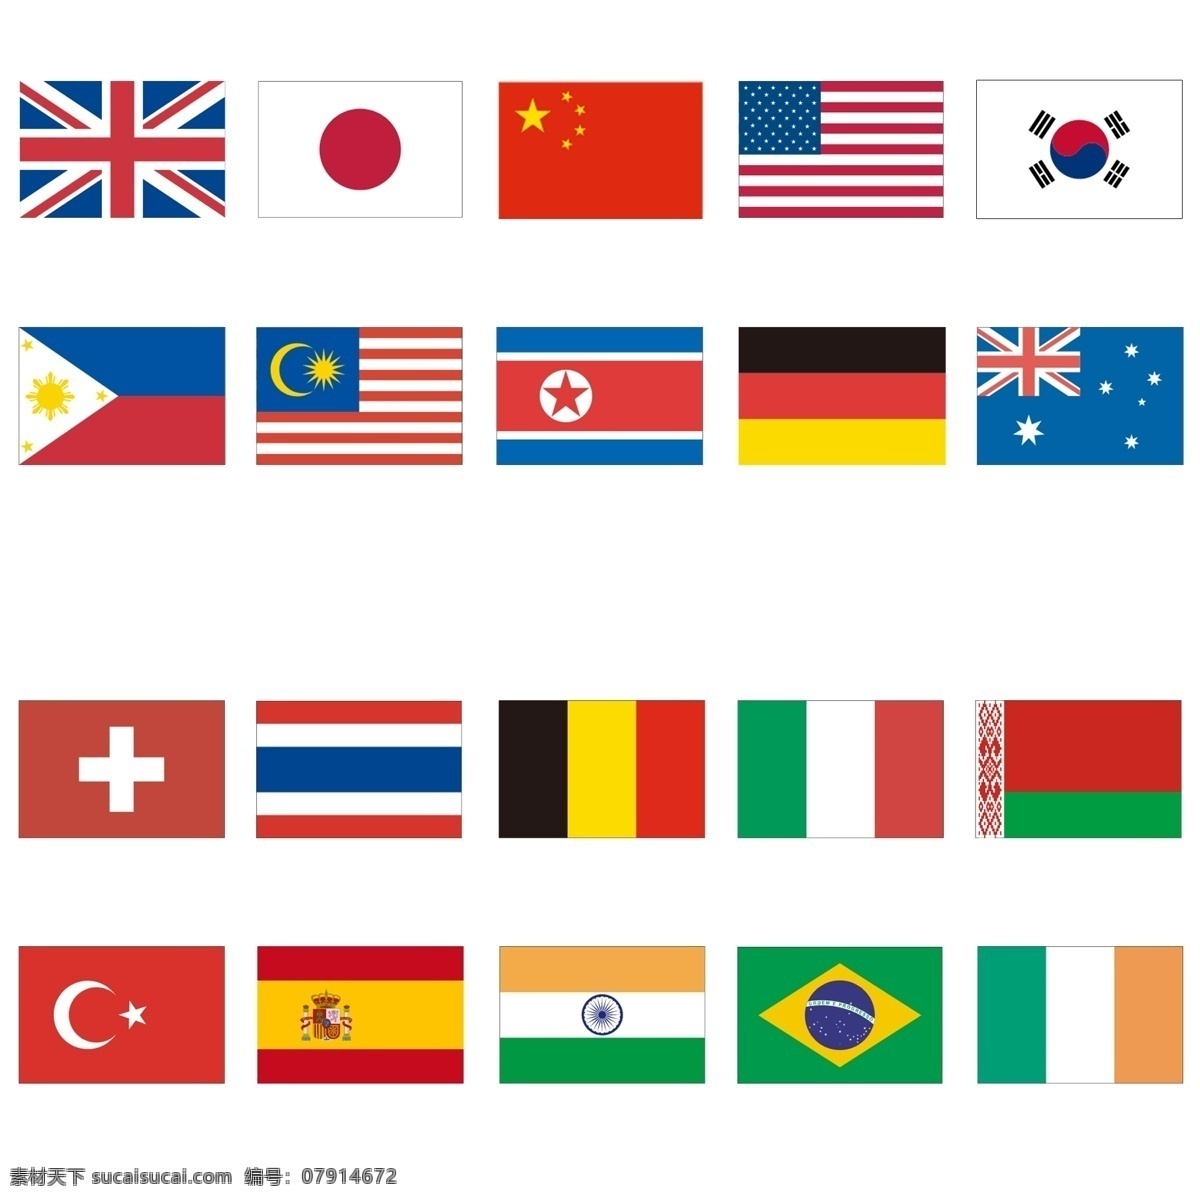 国旗小图标 爱尔兰 澳大利亚 巴西 白俄罗斯 比利时 朝鲜 德国 菲律宾 韩国 马来西亚 美国 日本 瑞士 泰国 土耳其 西班牙 意大利亚 印度 英国 中国